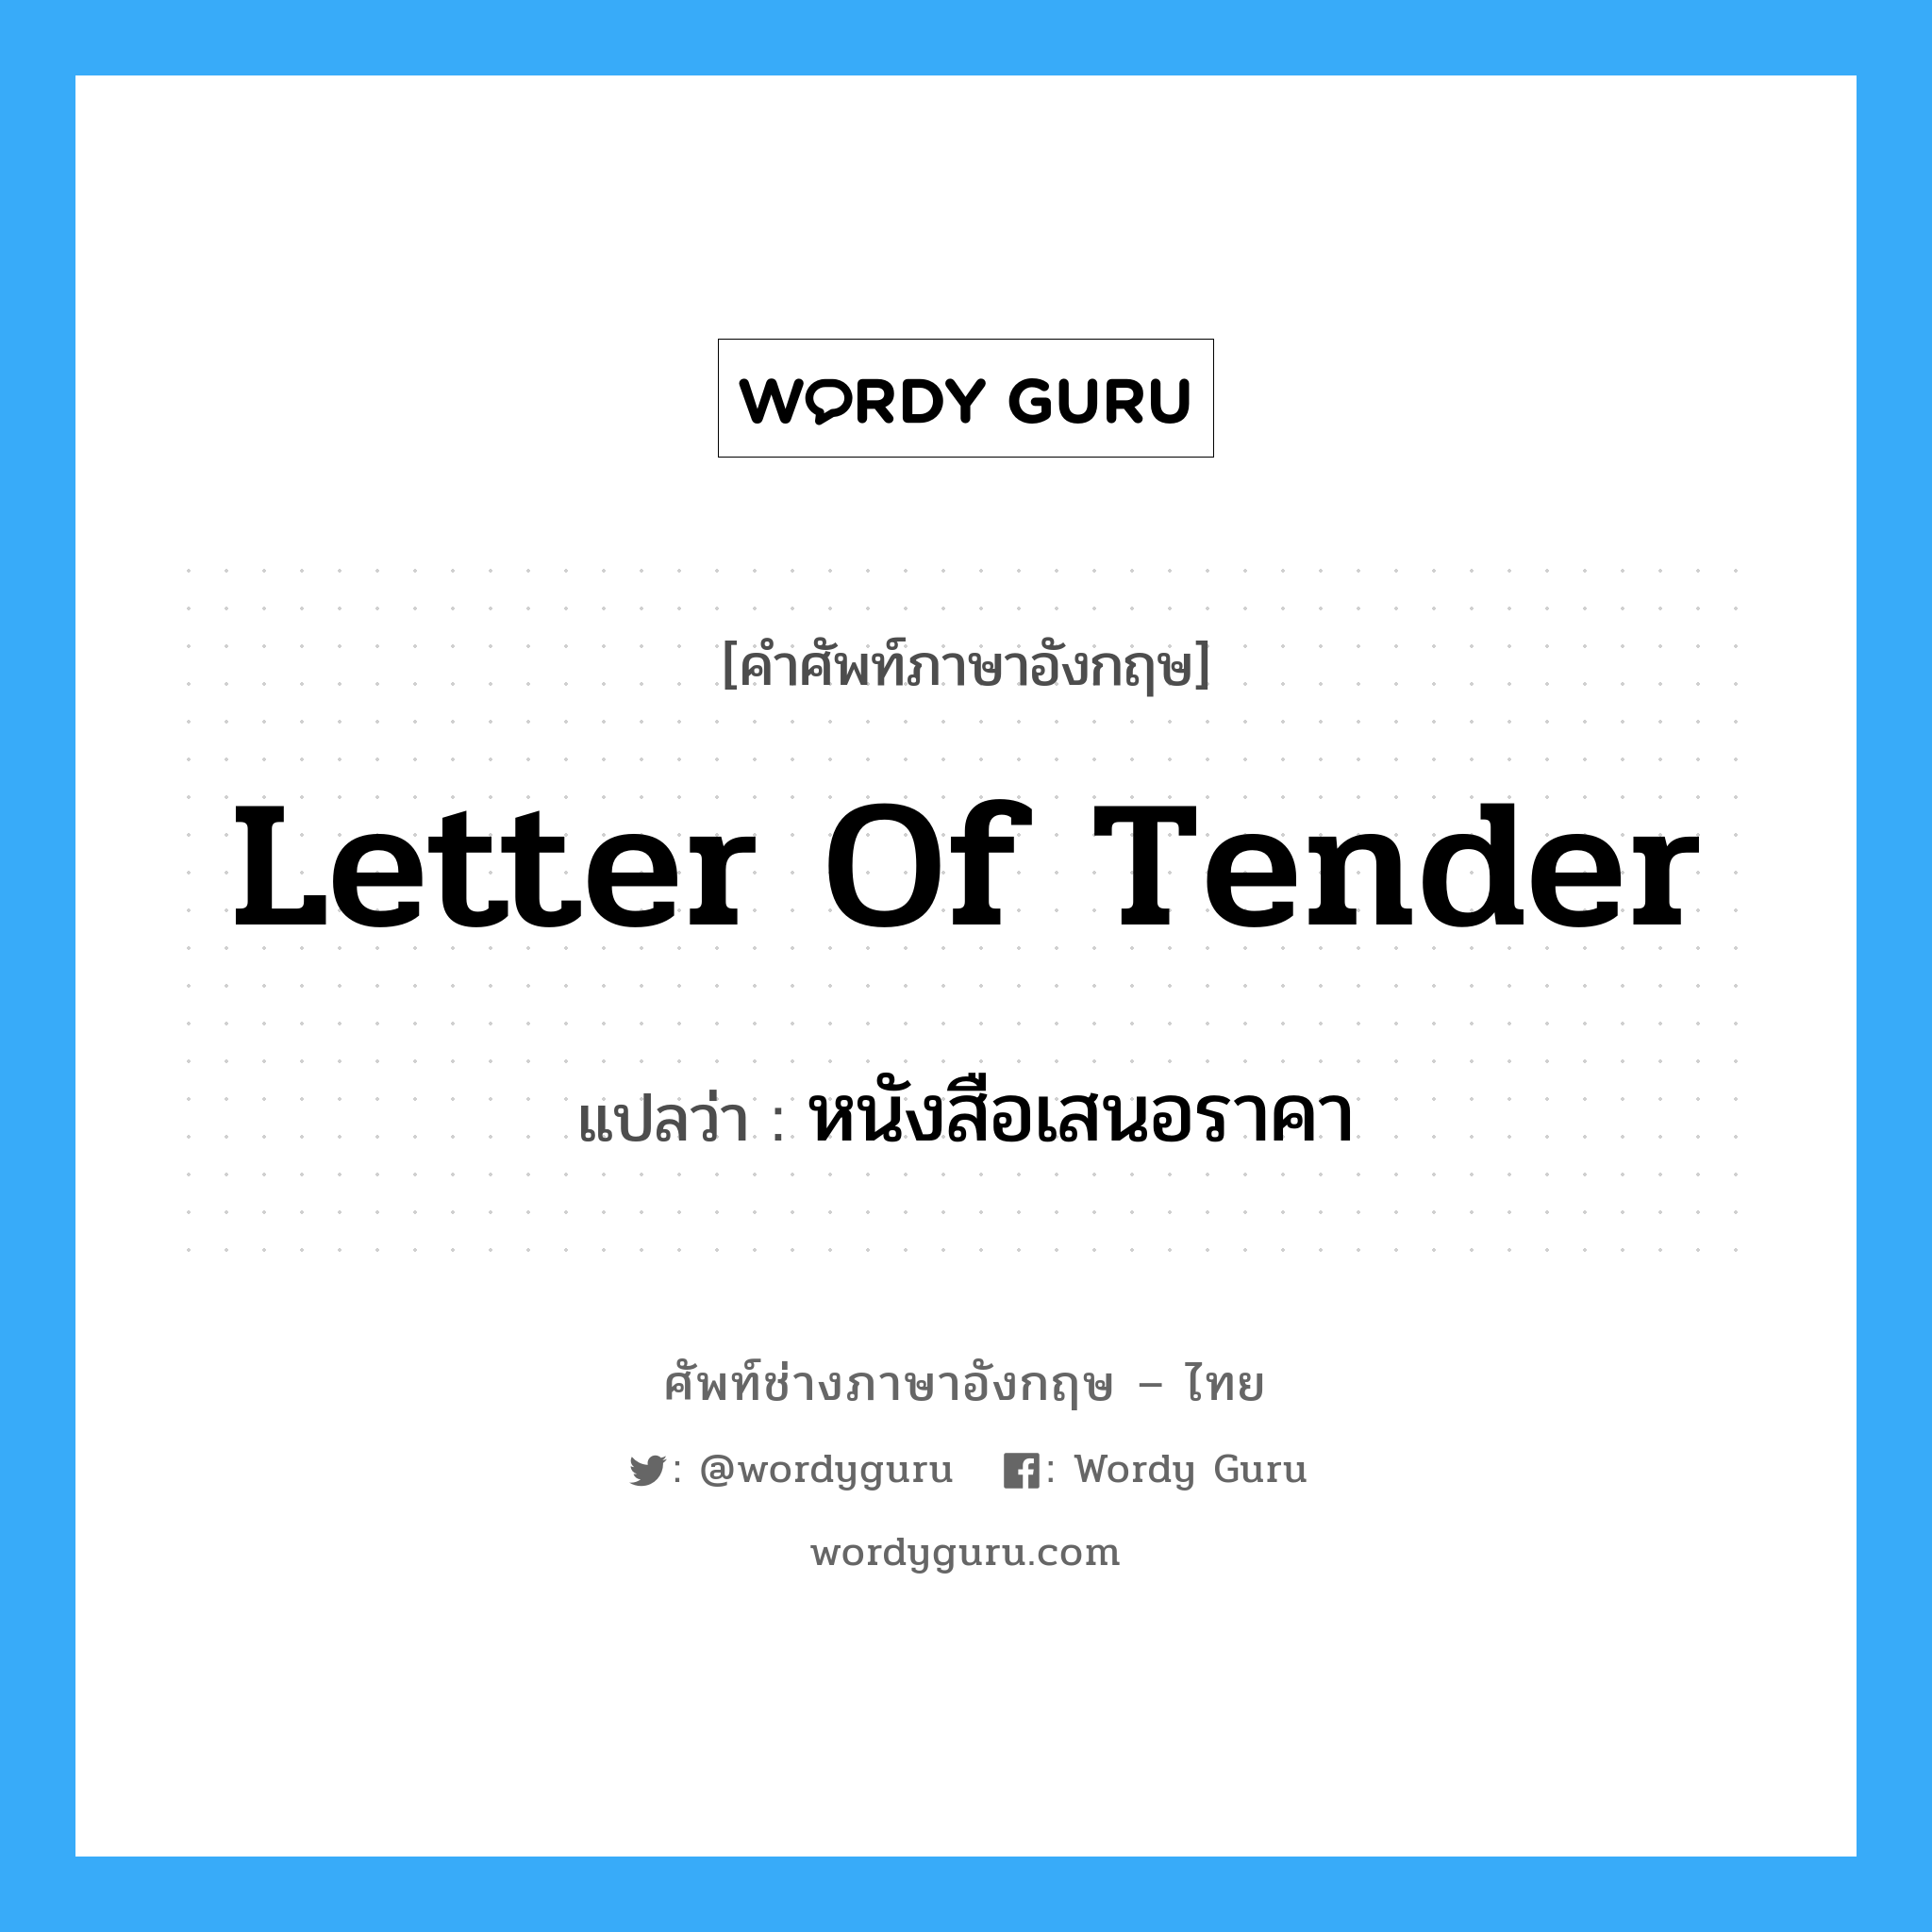 Letter of Tender แปลว่า?, คำศัพท์ช่างภาษาอังกฤษ - ไทย Letter of Tender คำศัพท์ภาษาอังกฤษ Letter of Tender แปลว่า หนังสือเสนอราคา